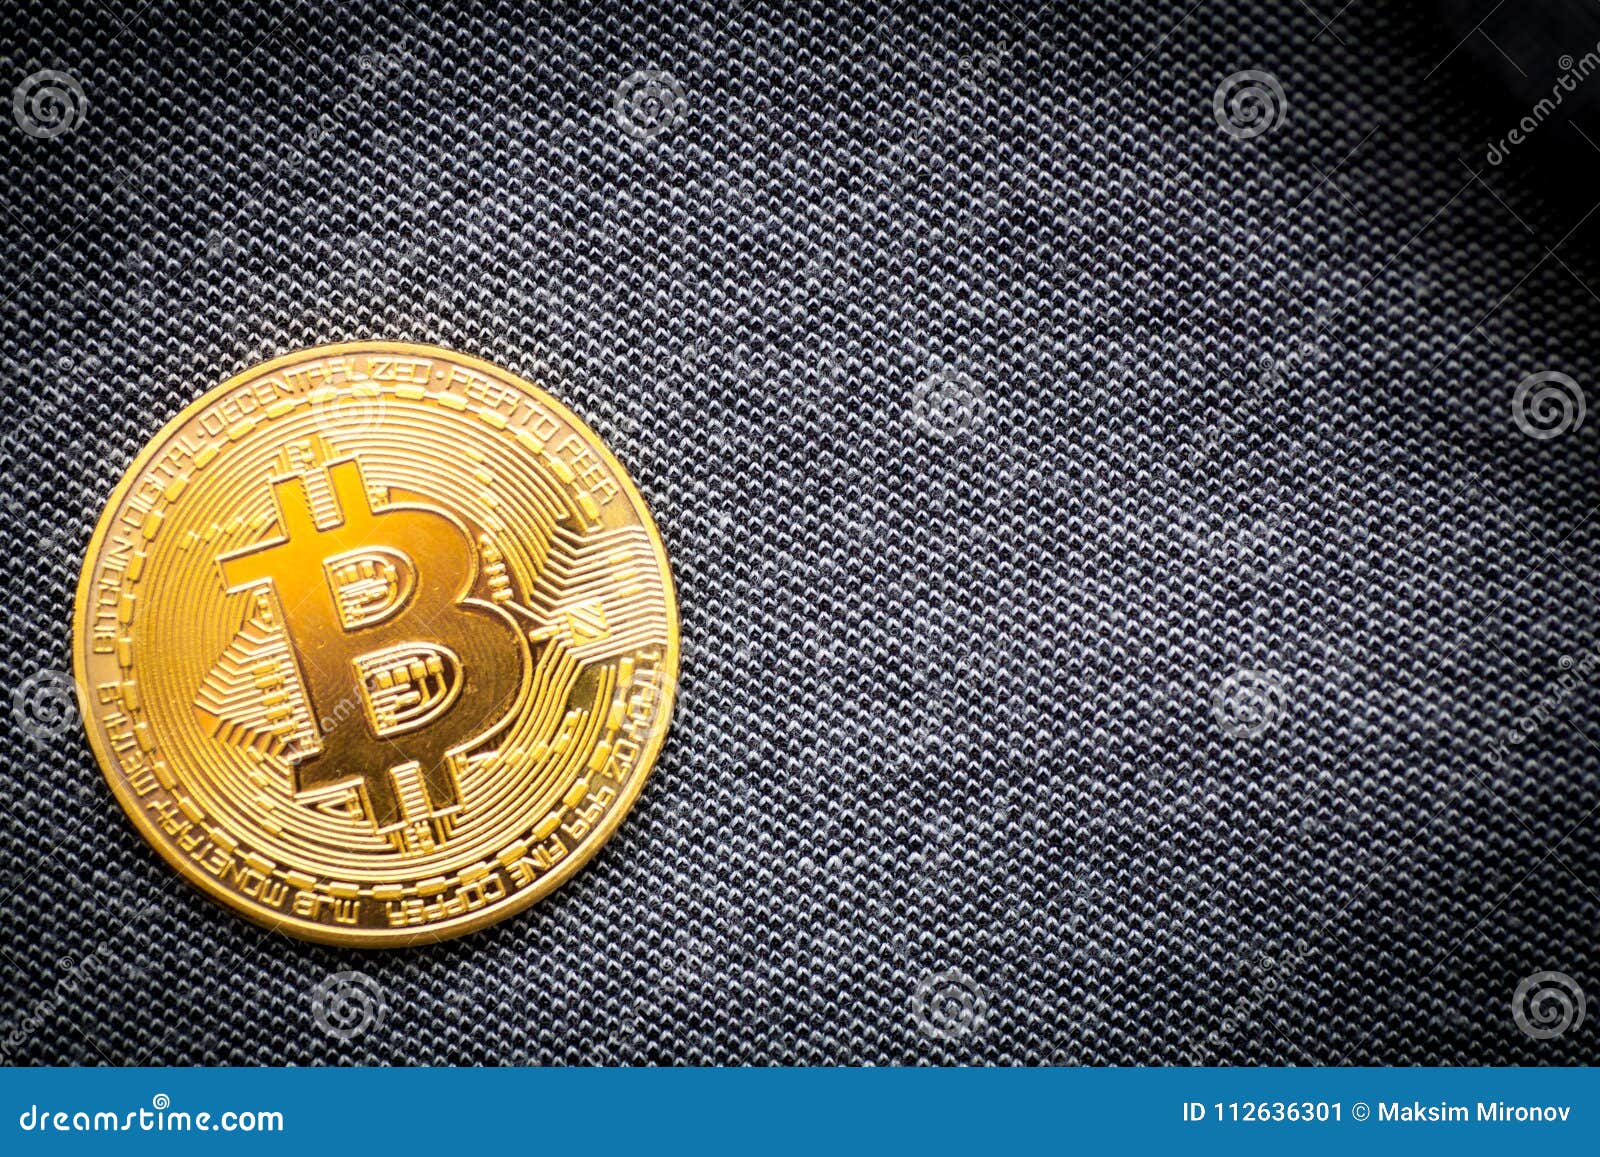 fique rico online obter ouro bitcoin de coinbase